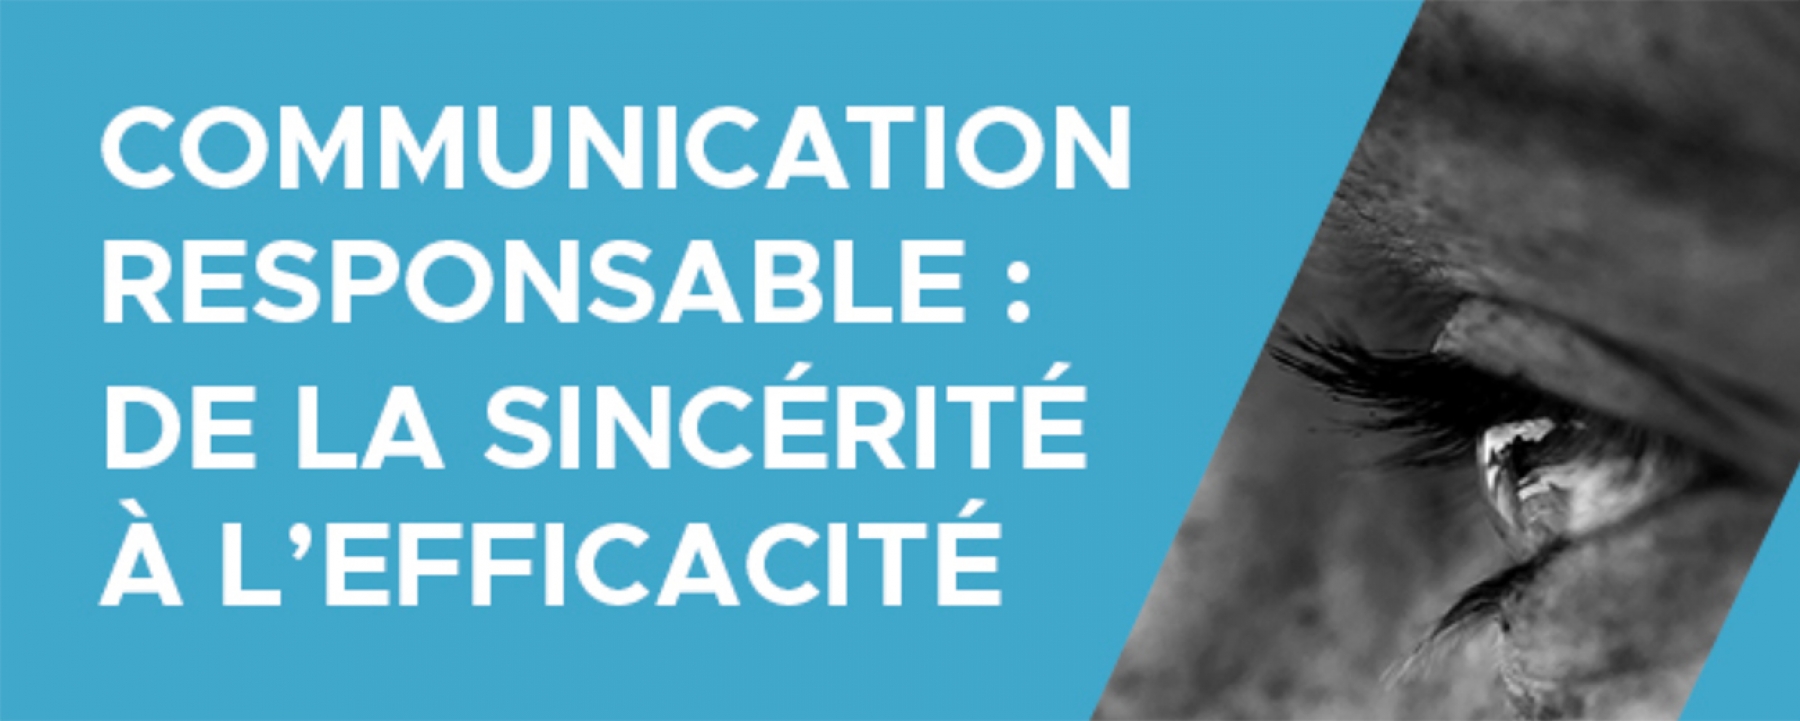 Communication responsable : de la sincérité à l’efficacité, Stratégies et Media.Figaro le 20 mai